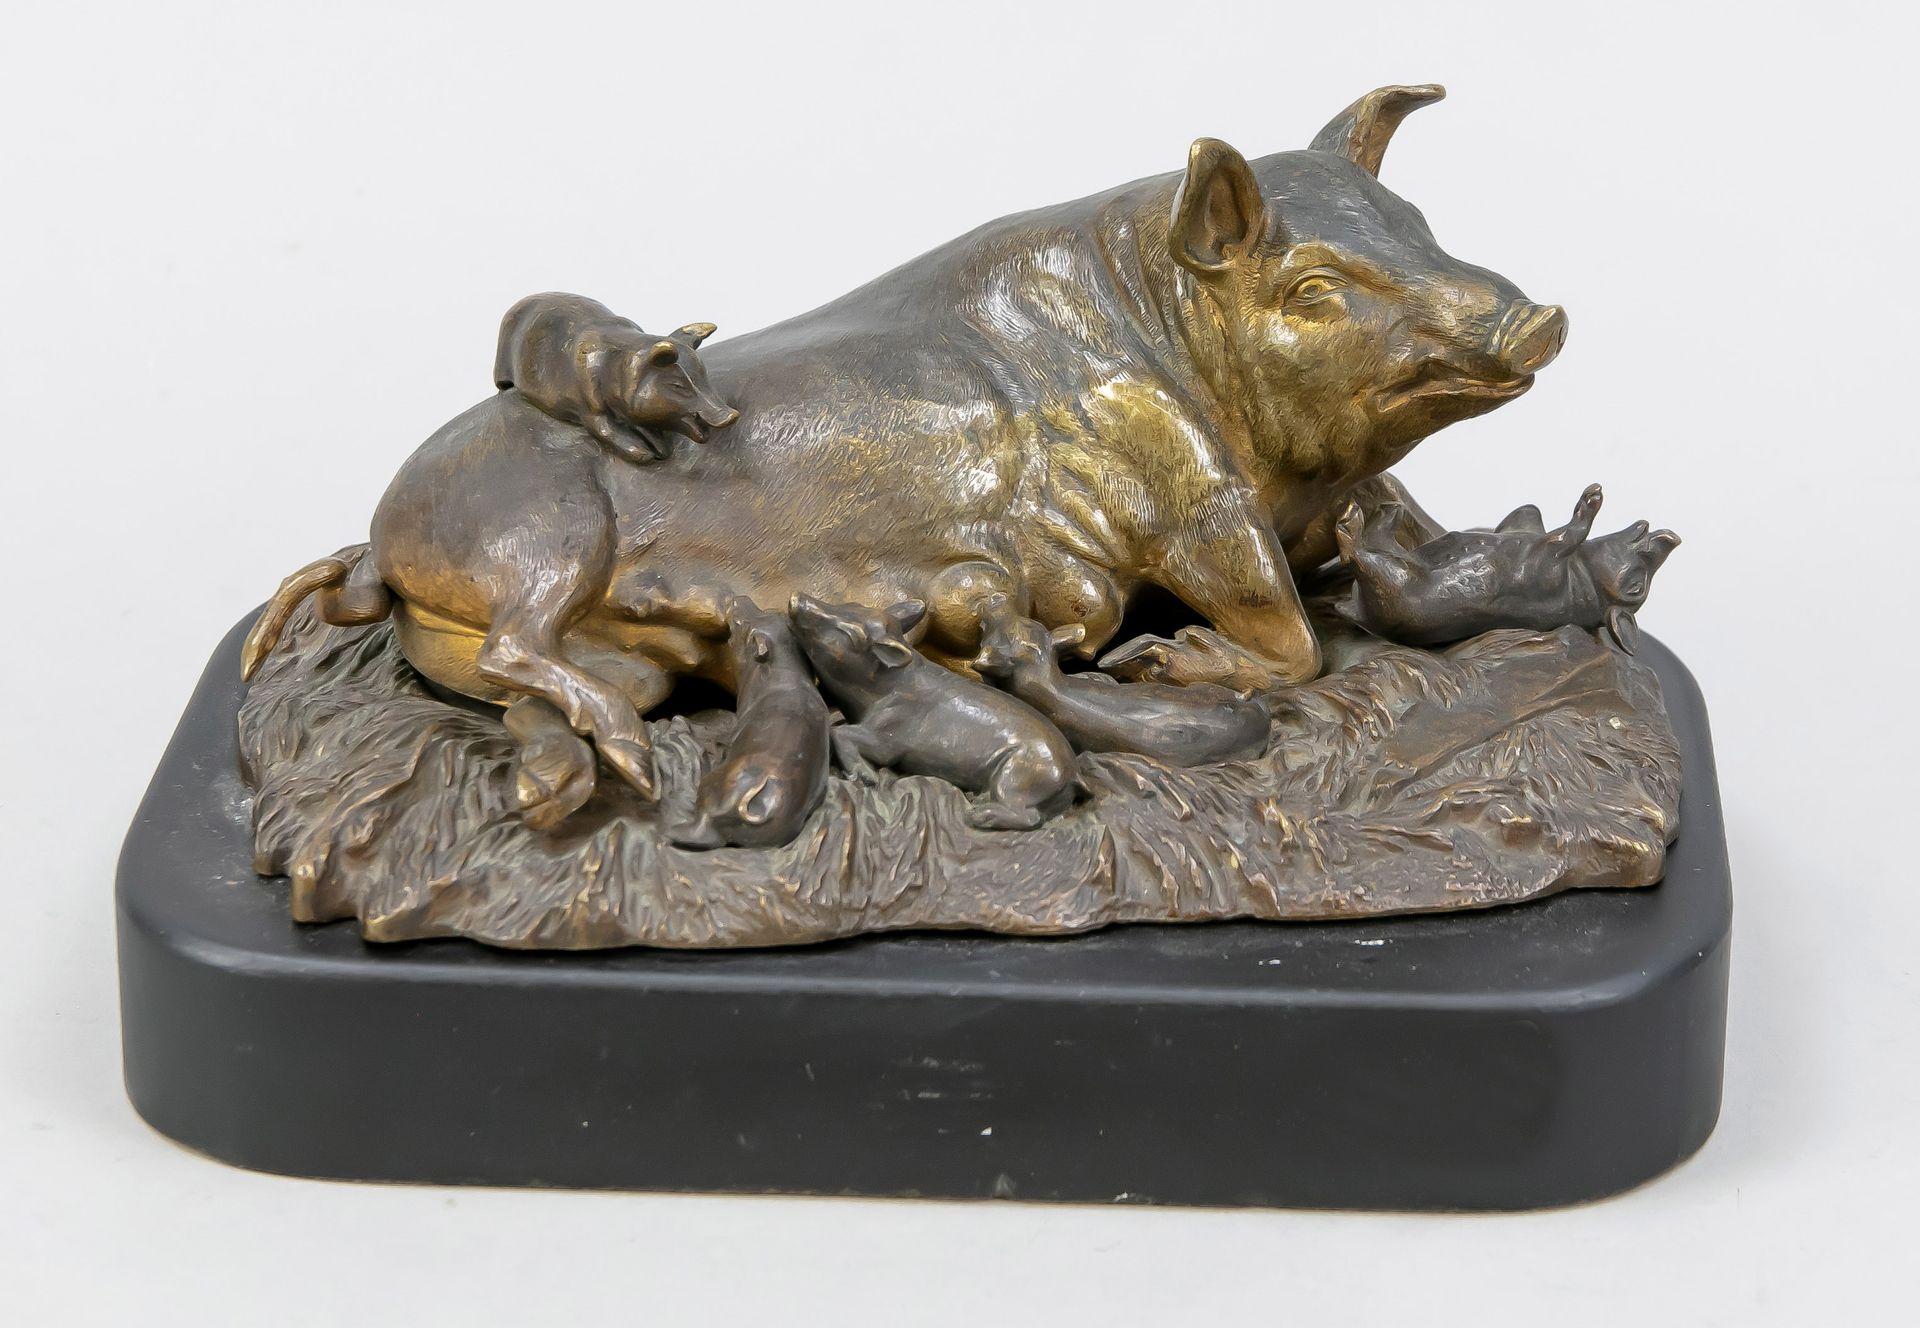 Null 19世纪下半叶的匈牙利雕塑家，母猪和小猪。青铜，有光泽。创始人的印章/签名 "Testory R.T."，黑漆砂岩底座。在一个用稻草铺成的马厩地板形式&hellip;